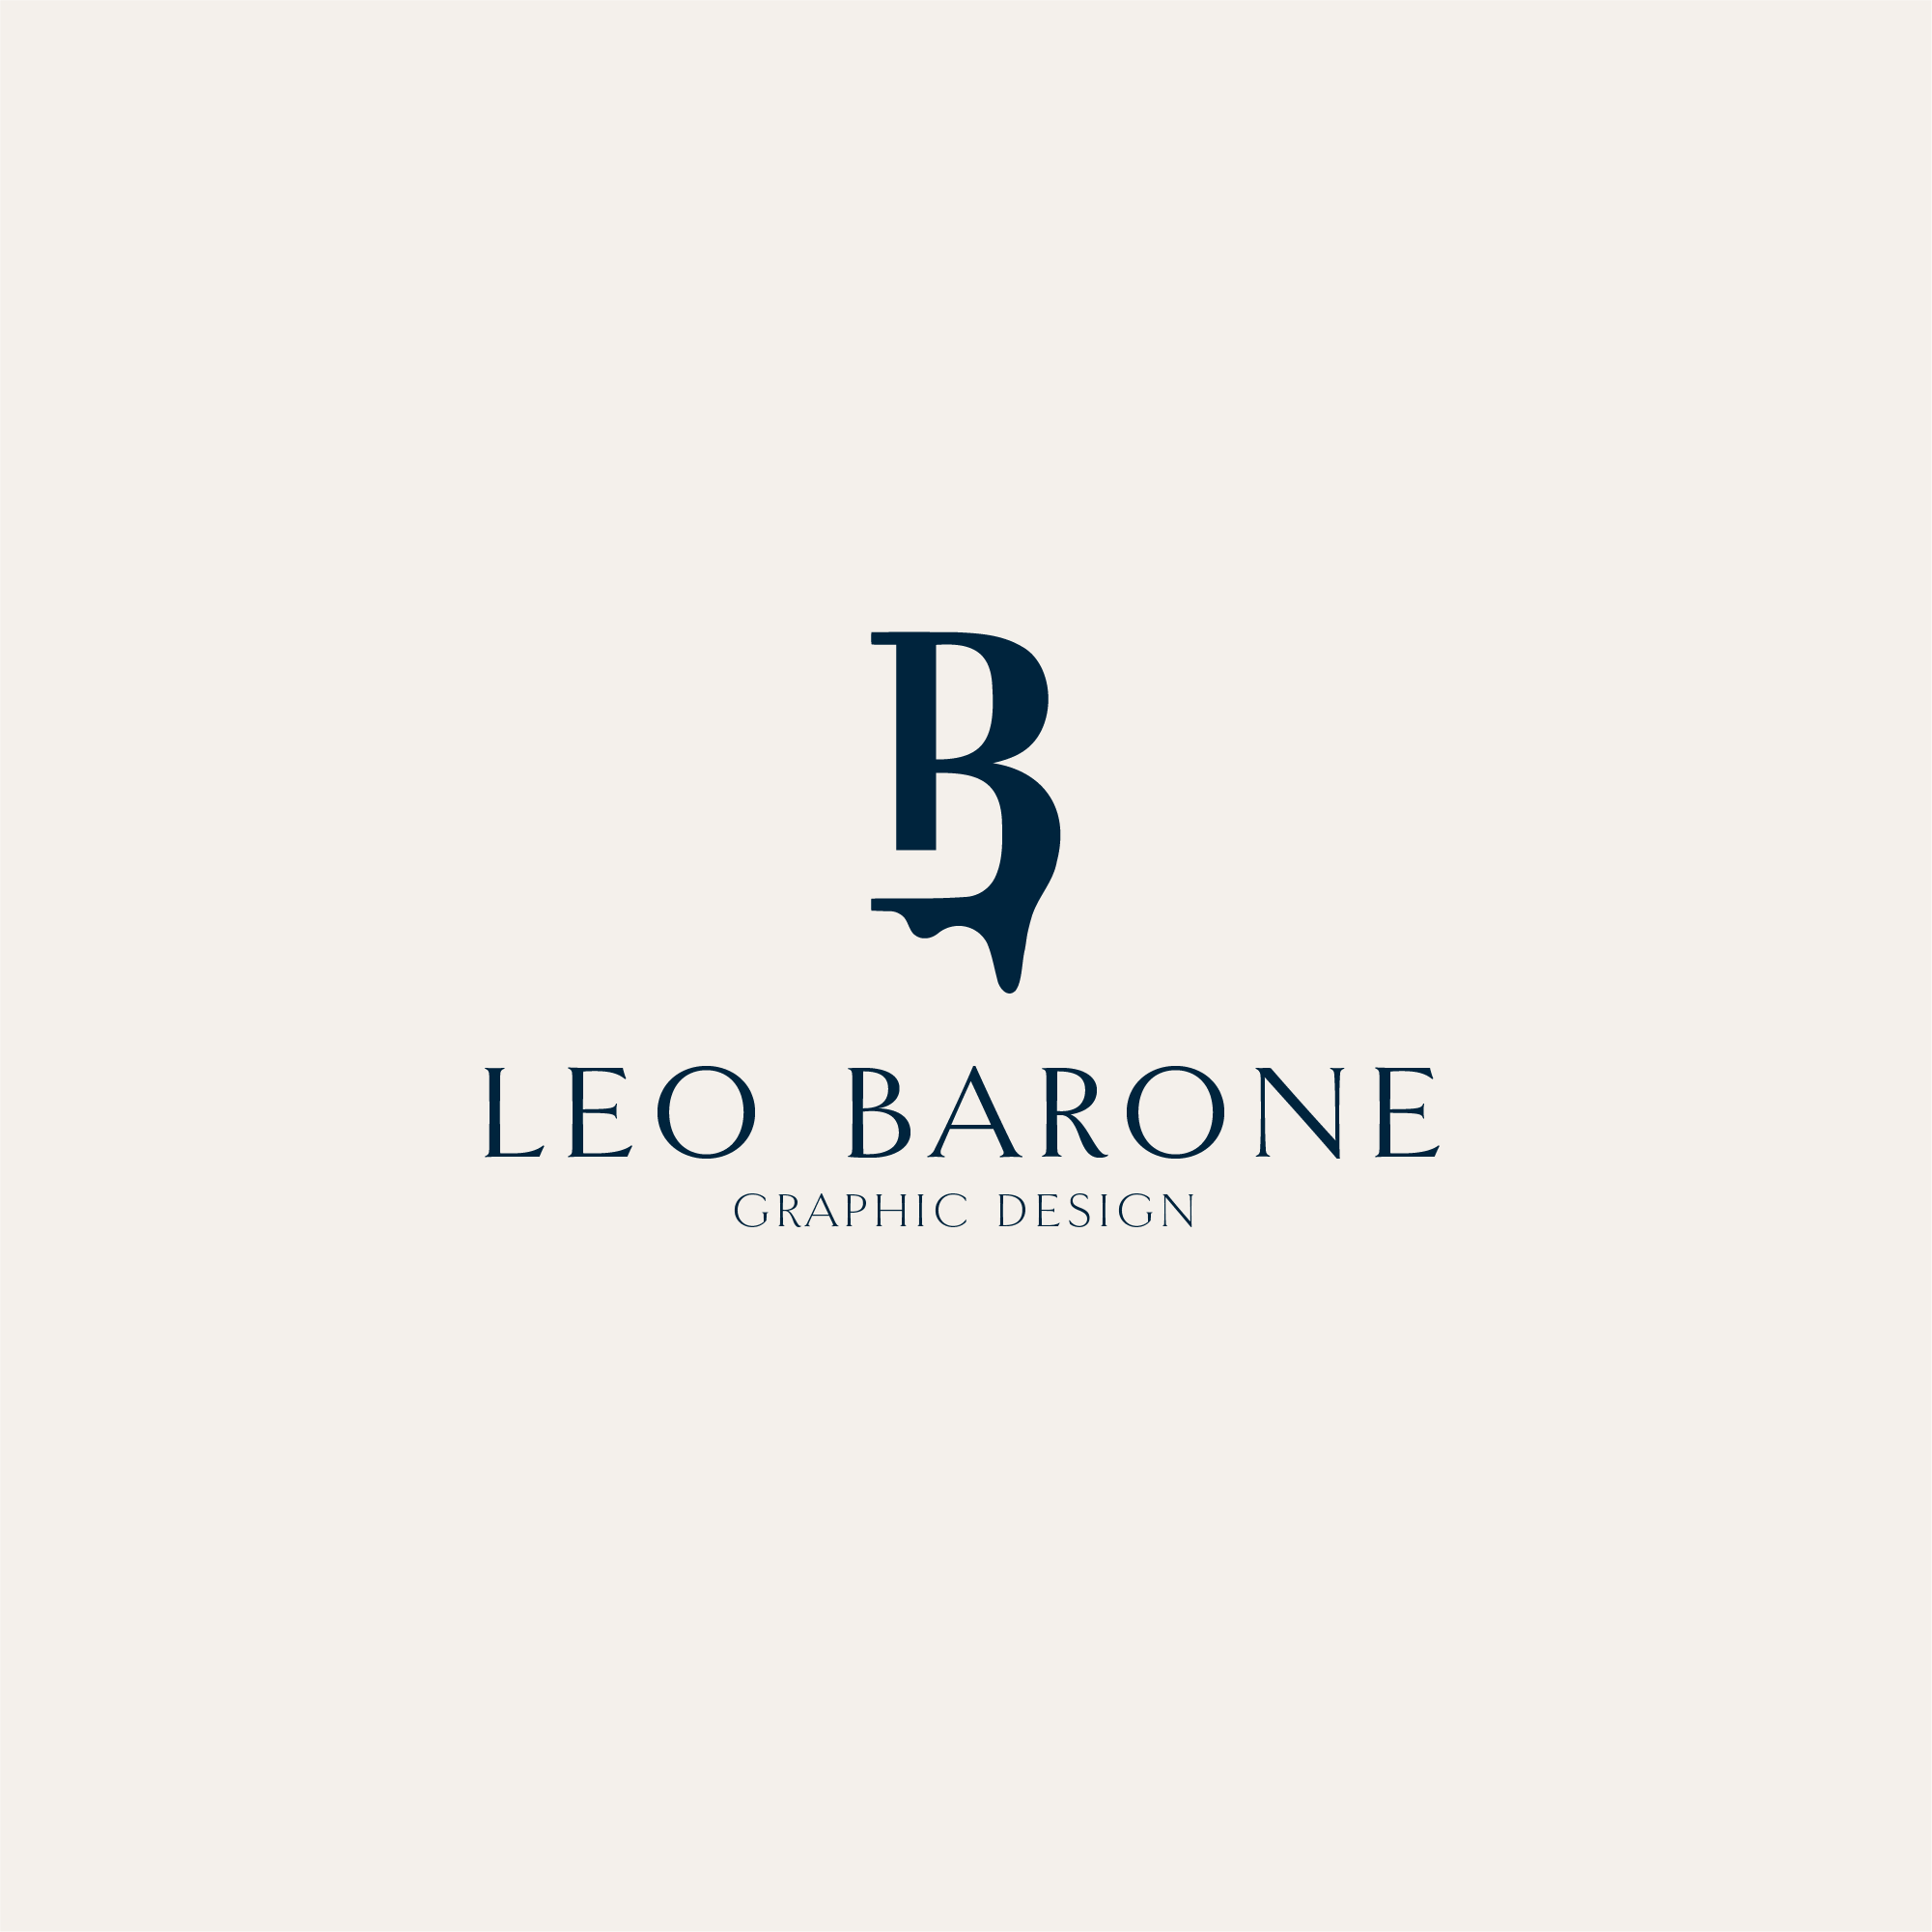 Leo Barone